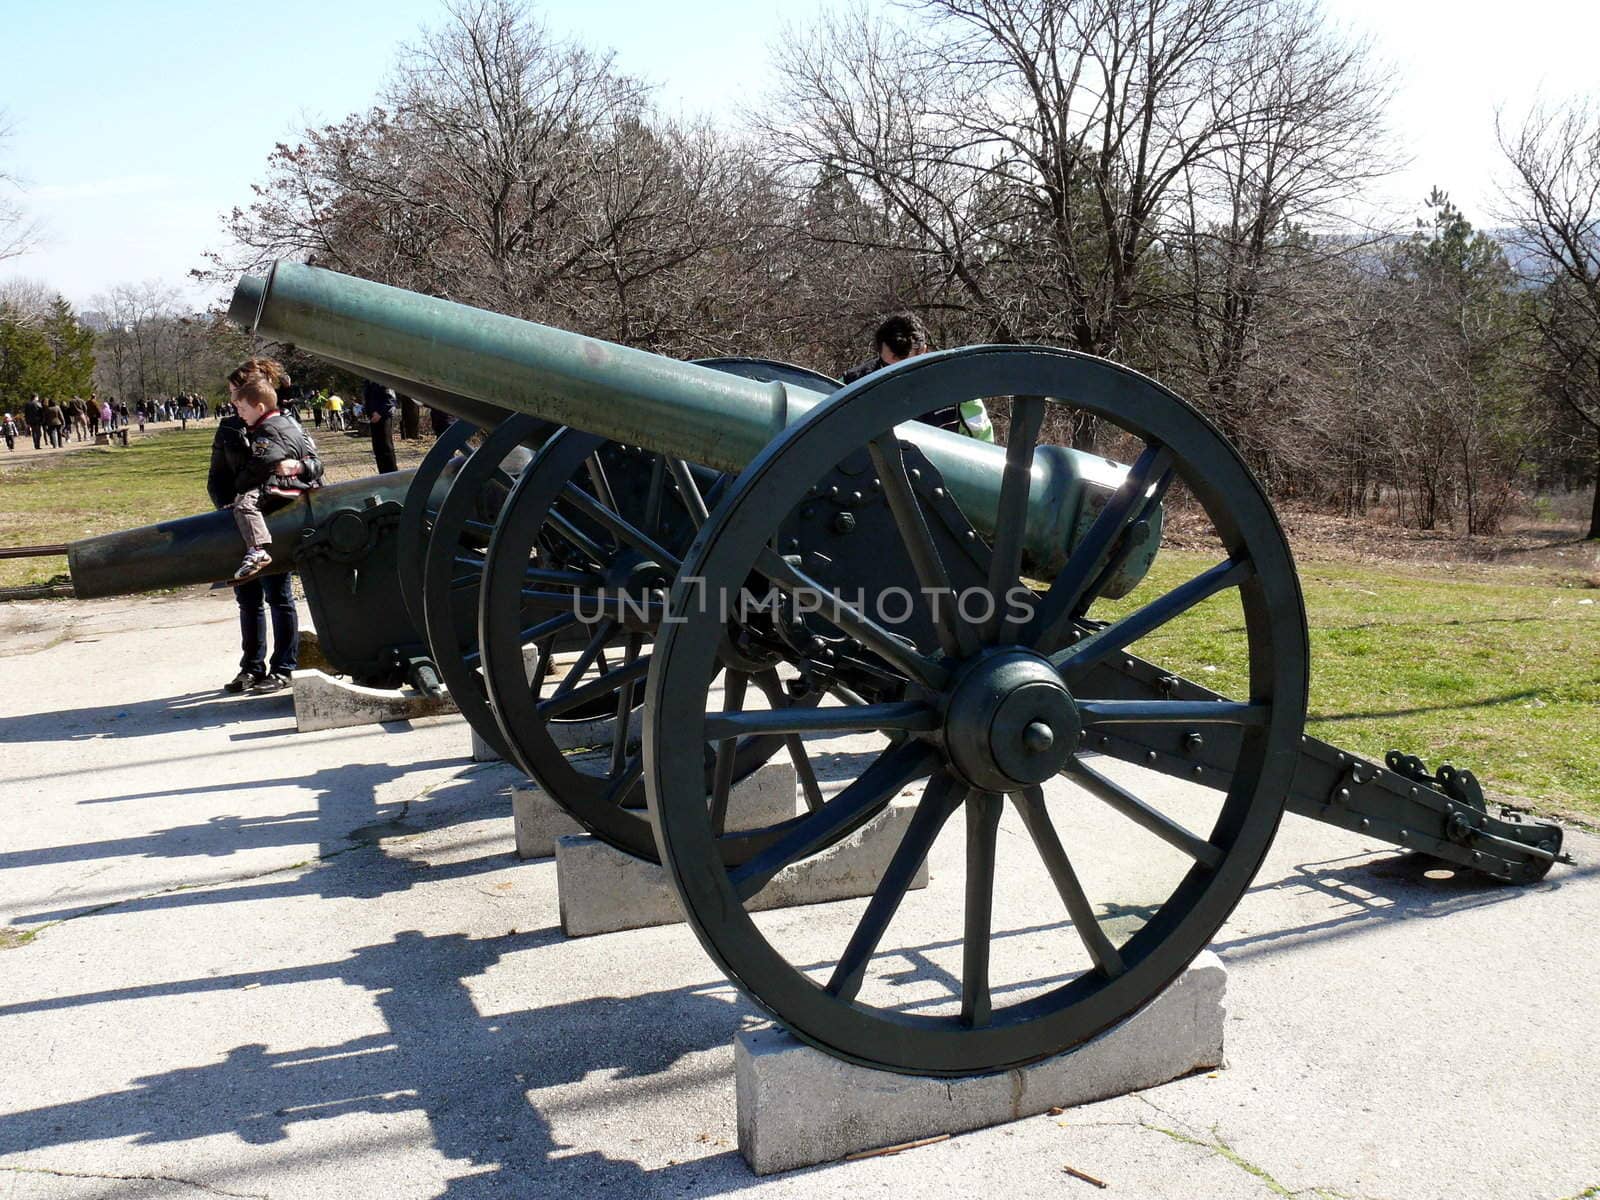 Cannon in Skobelev Park, Pleven, Bulgaria by Stoyanov